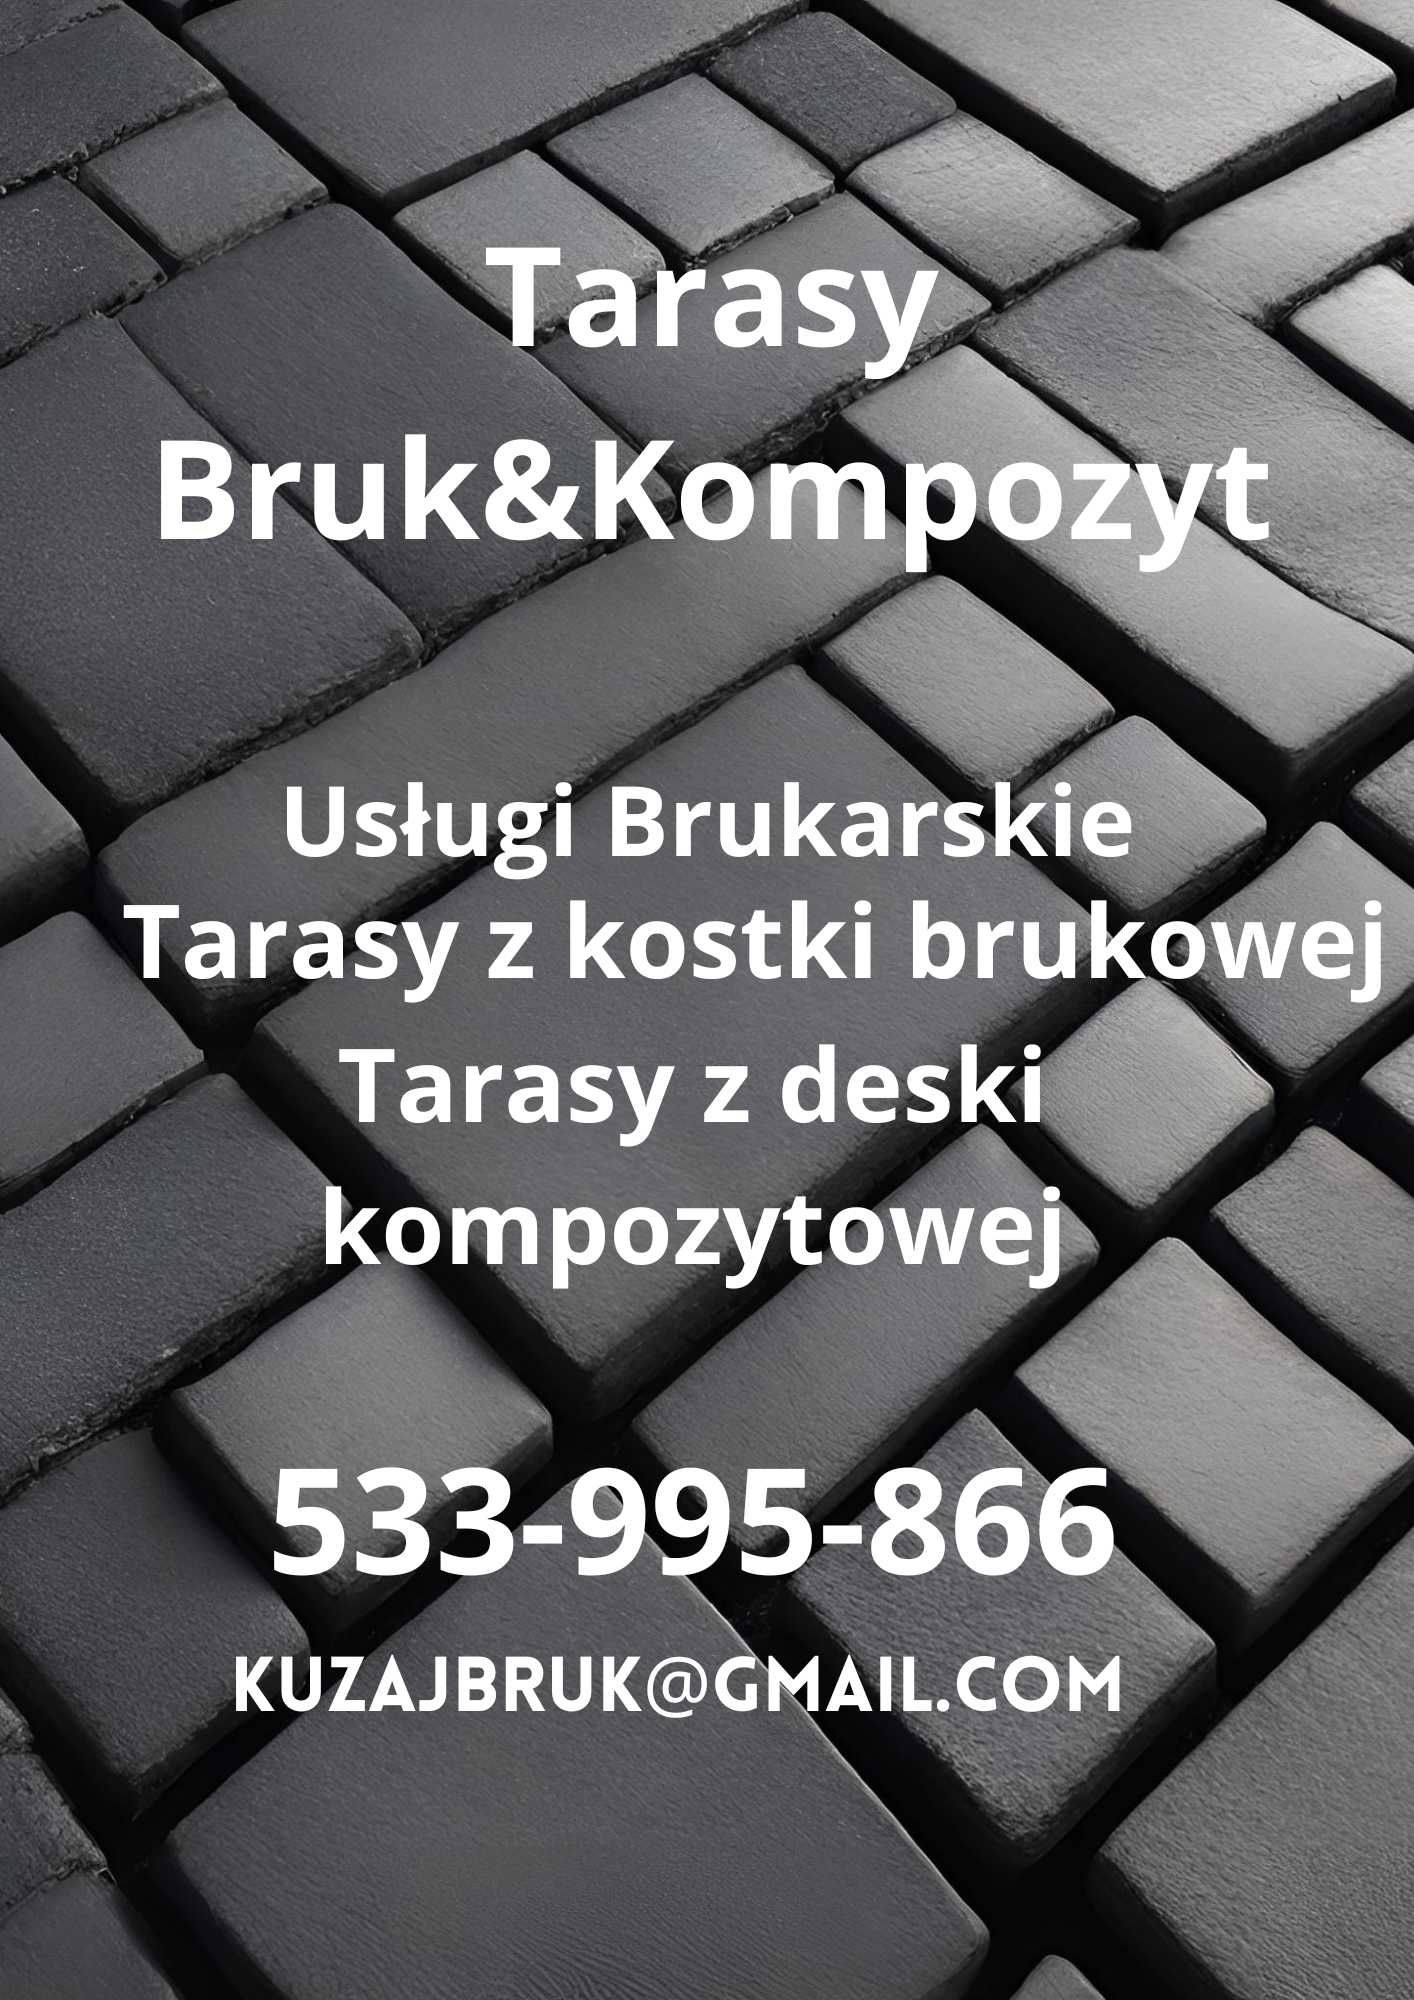 Usługi Brukarskie Tarasy Bruk&Kompozyt